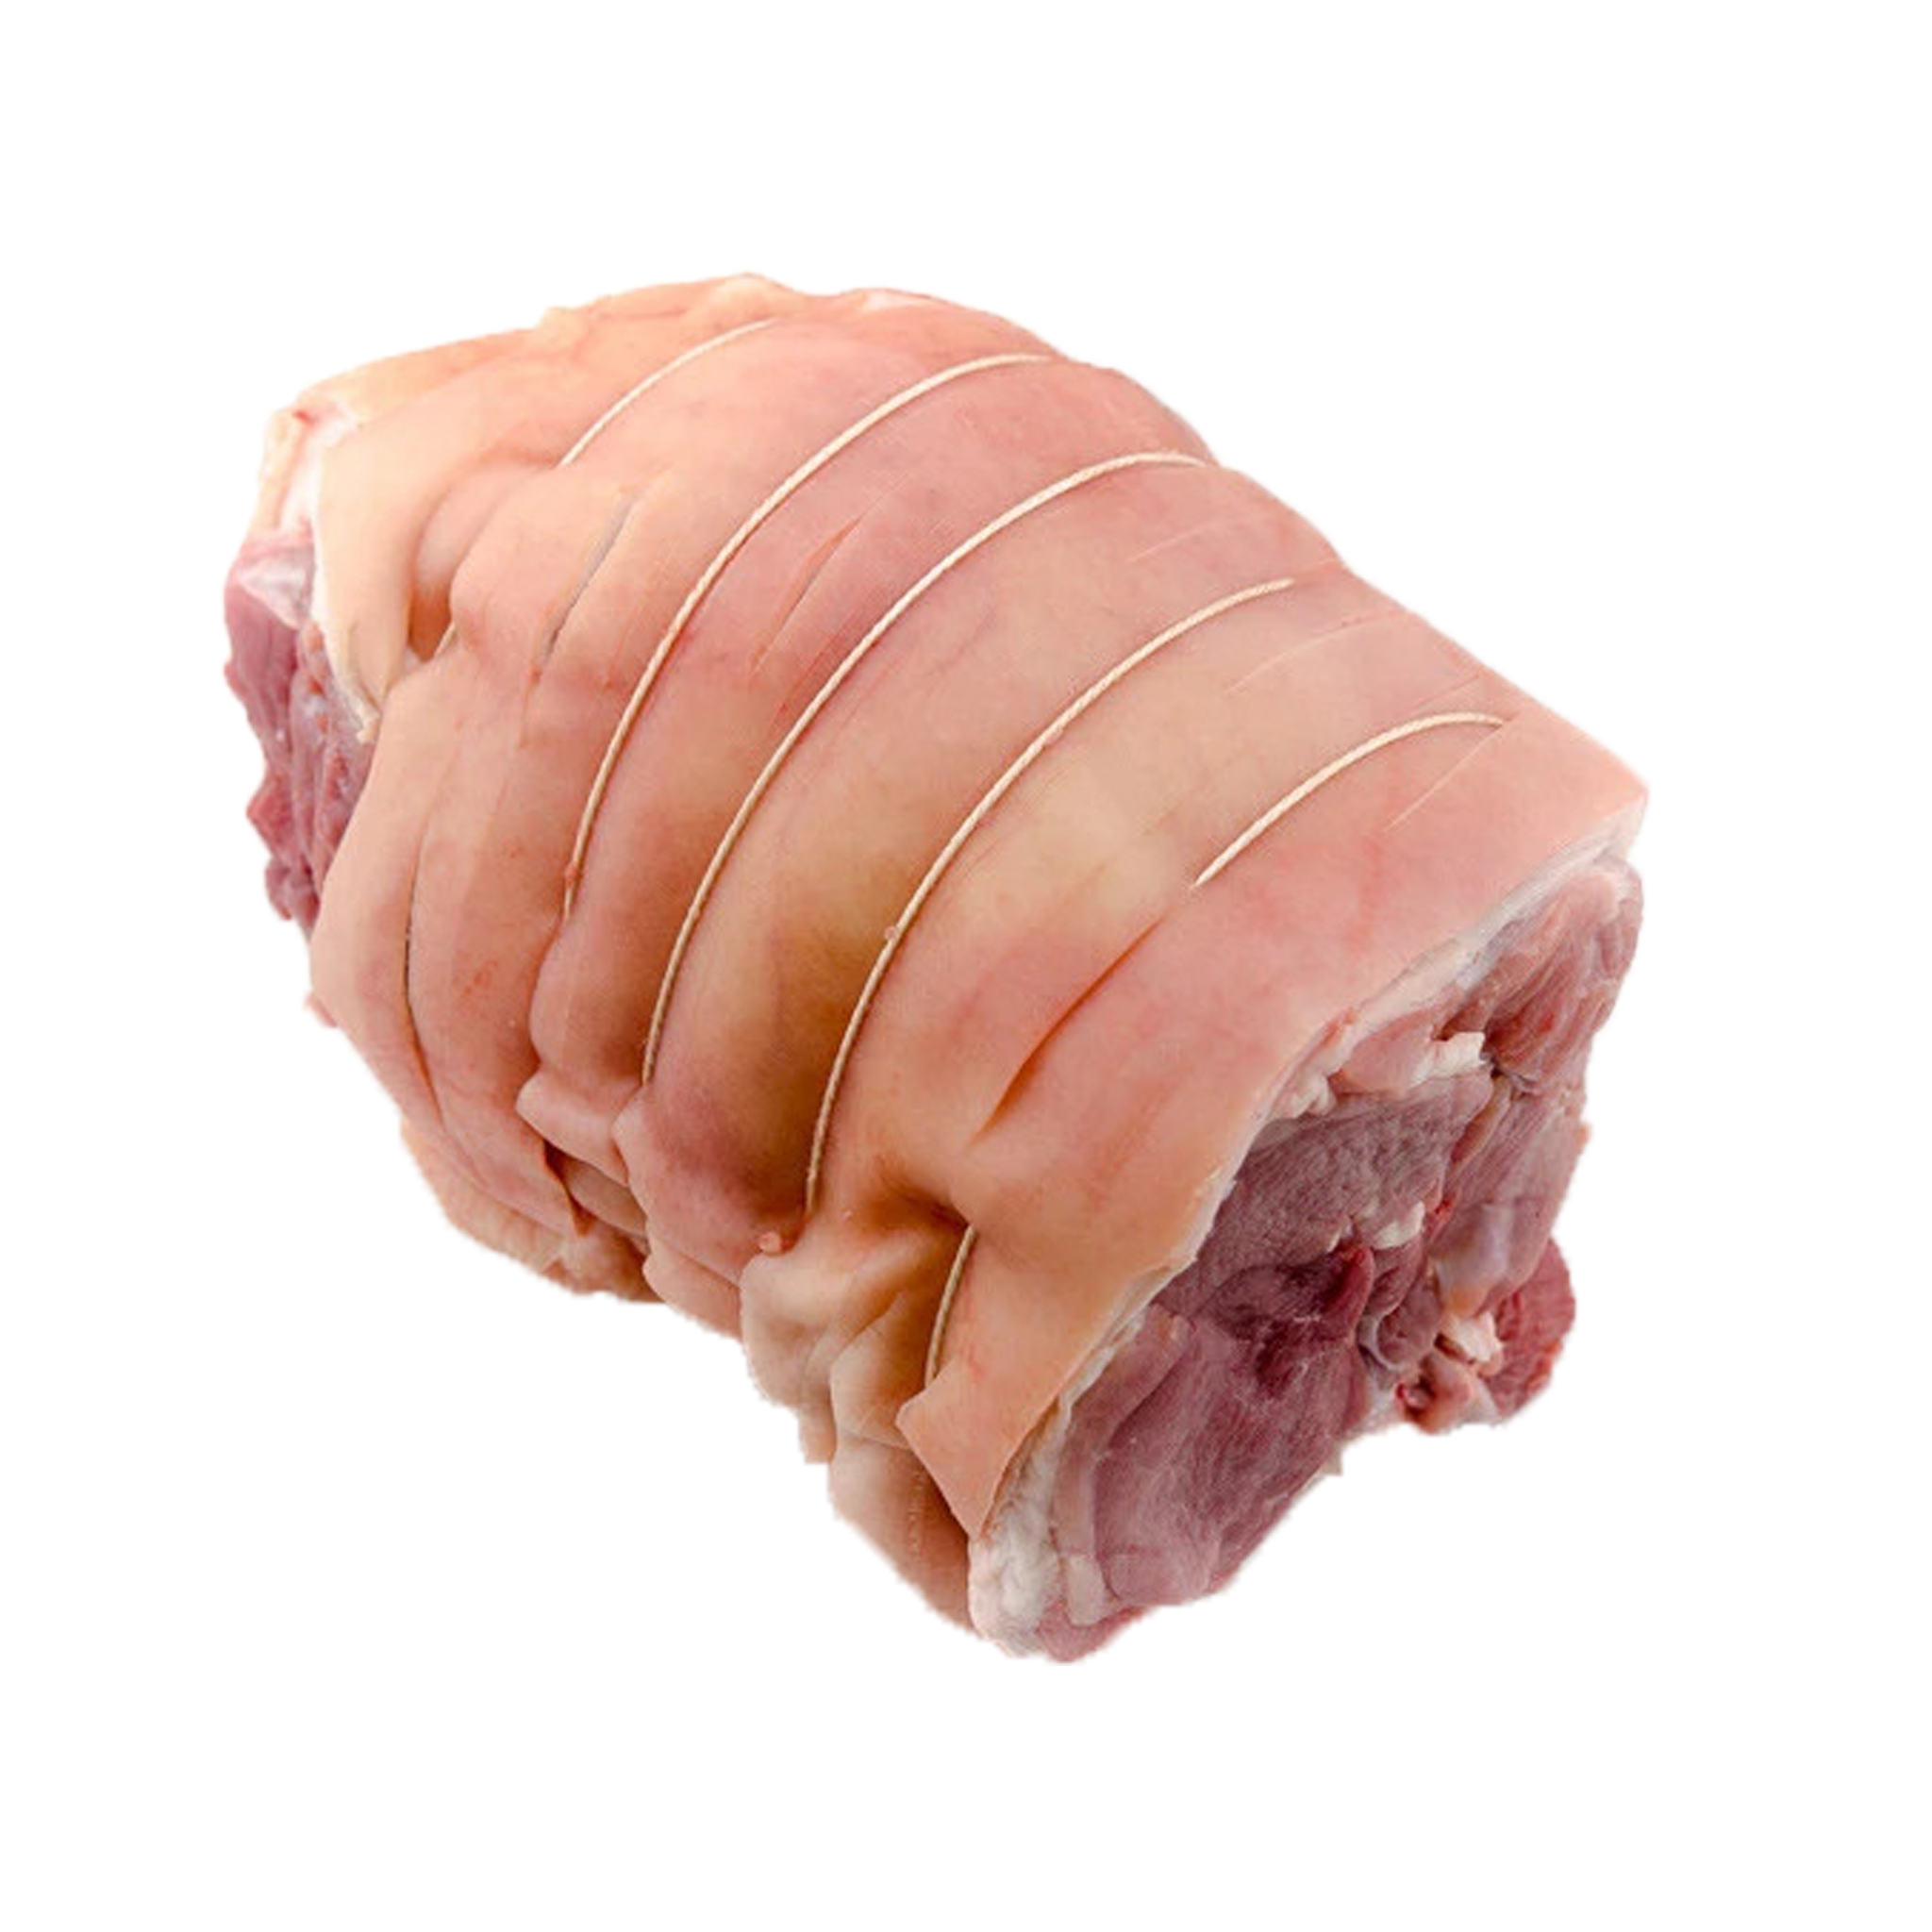 Boneless leg of pork